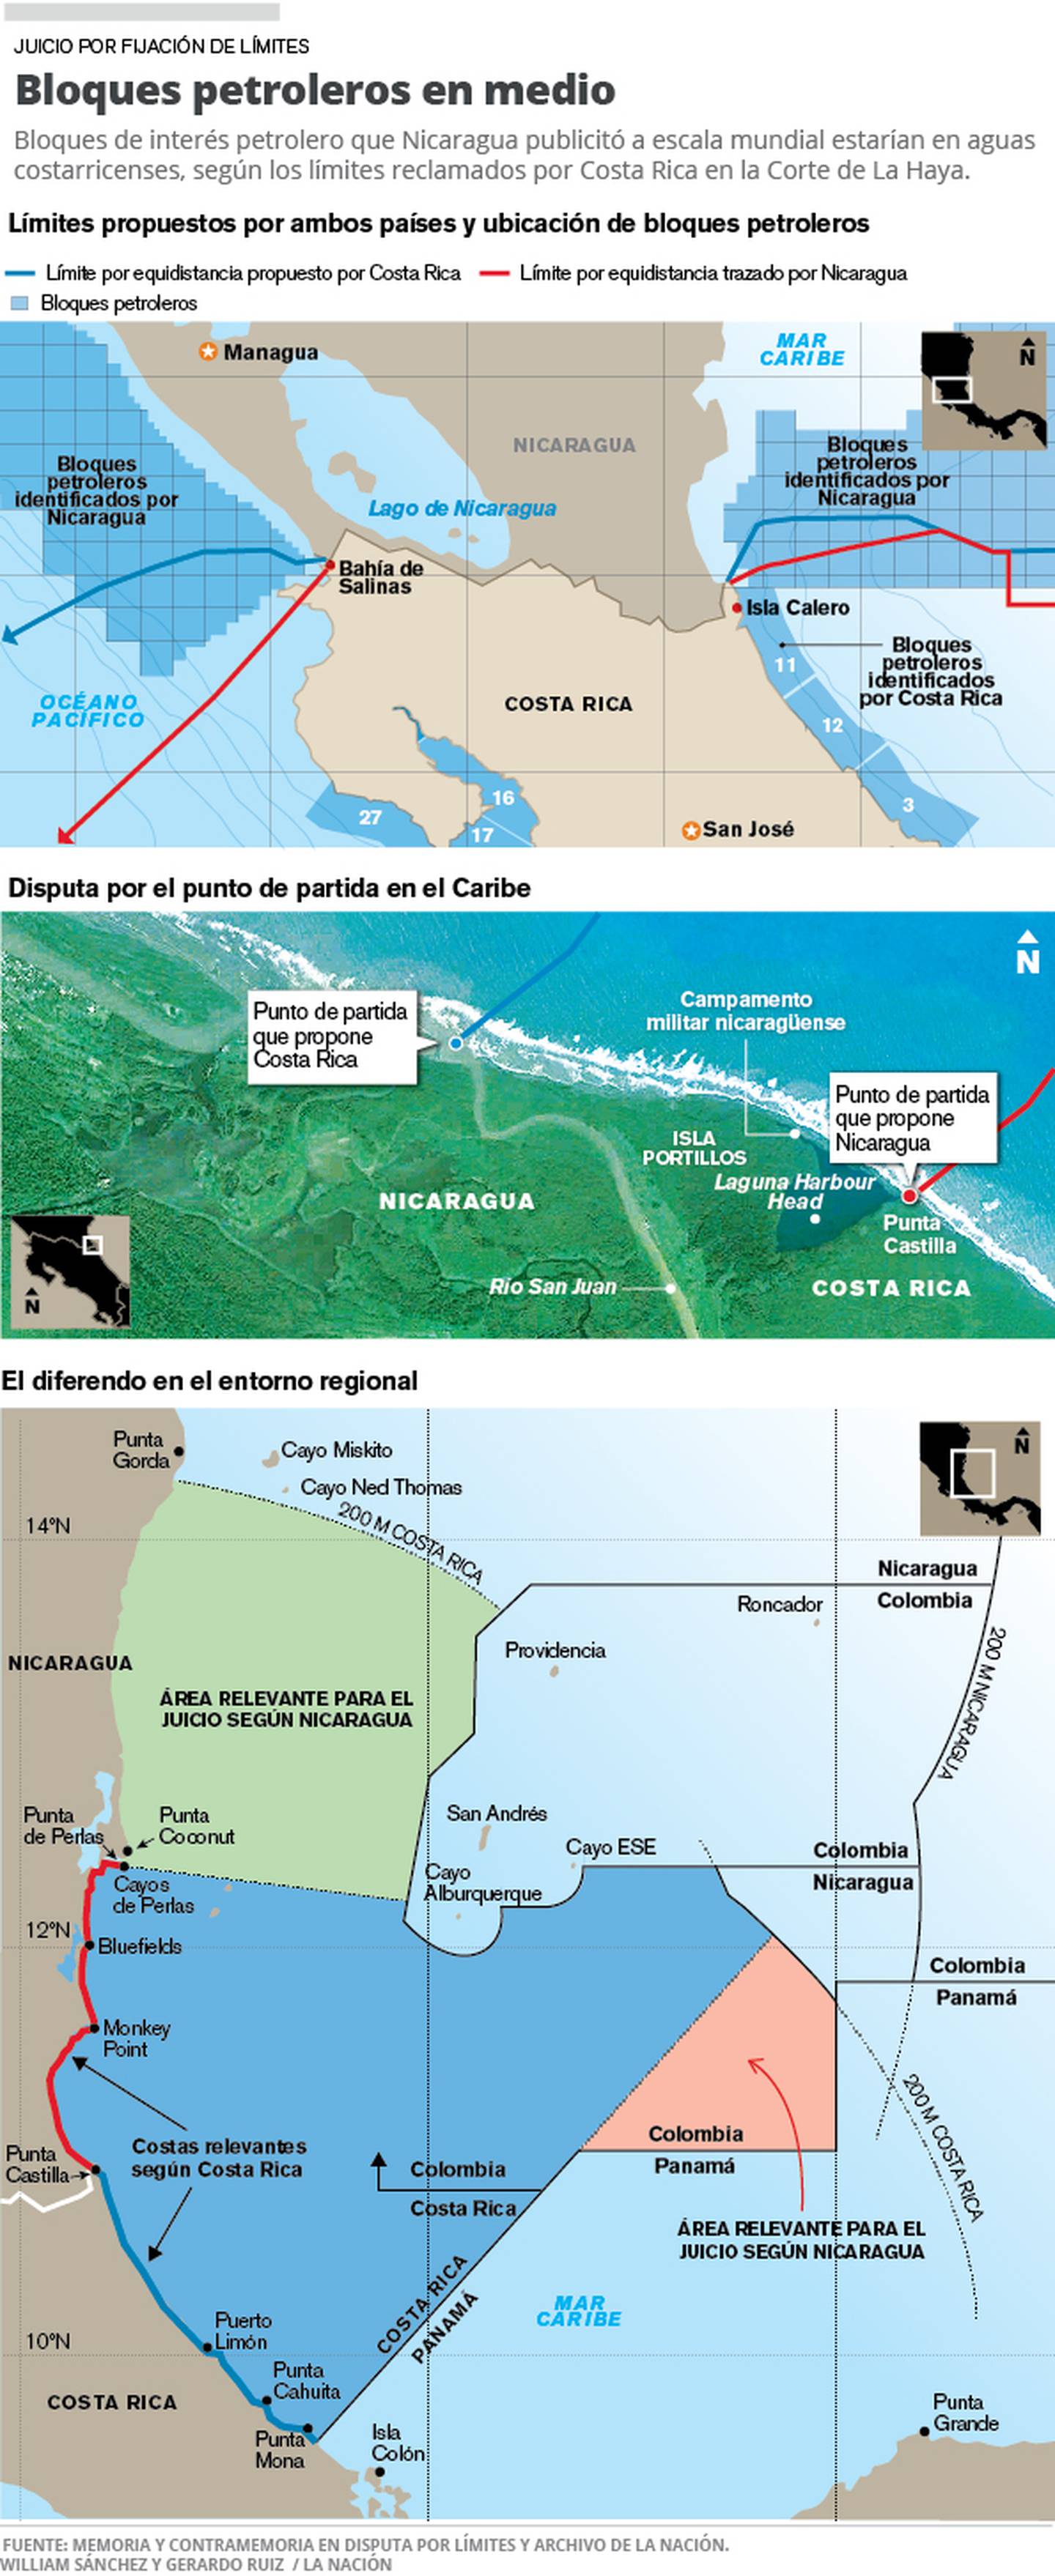 Costa Rica reclama en La Haya mar con 37 bloques de interés petrolero